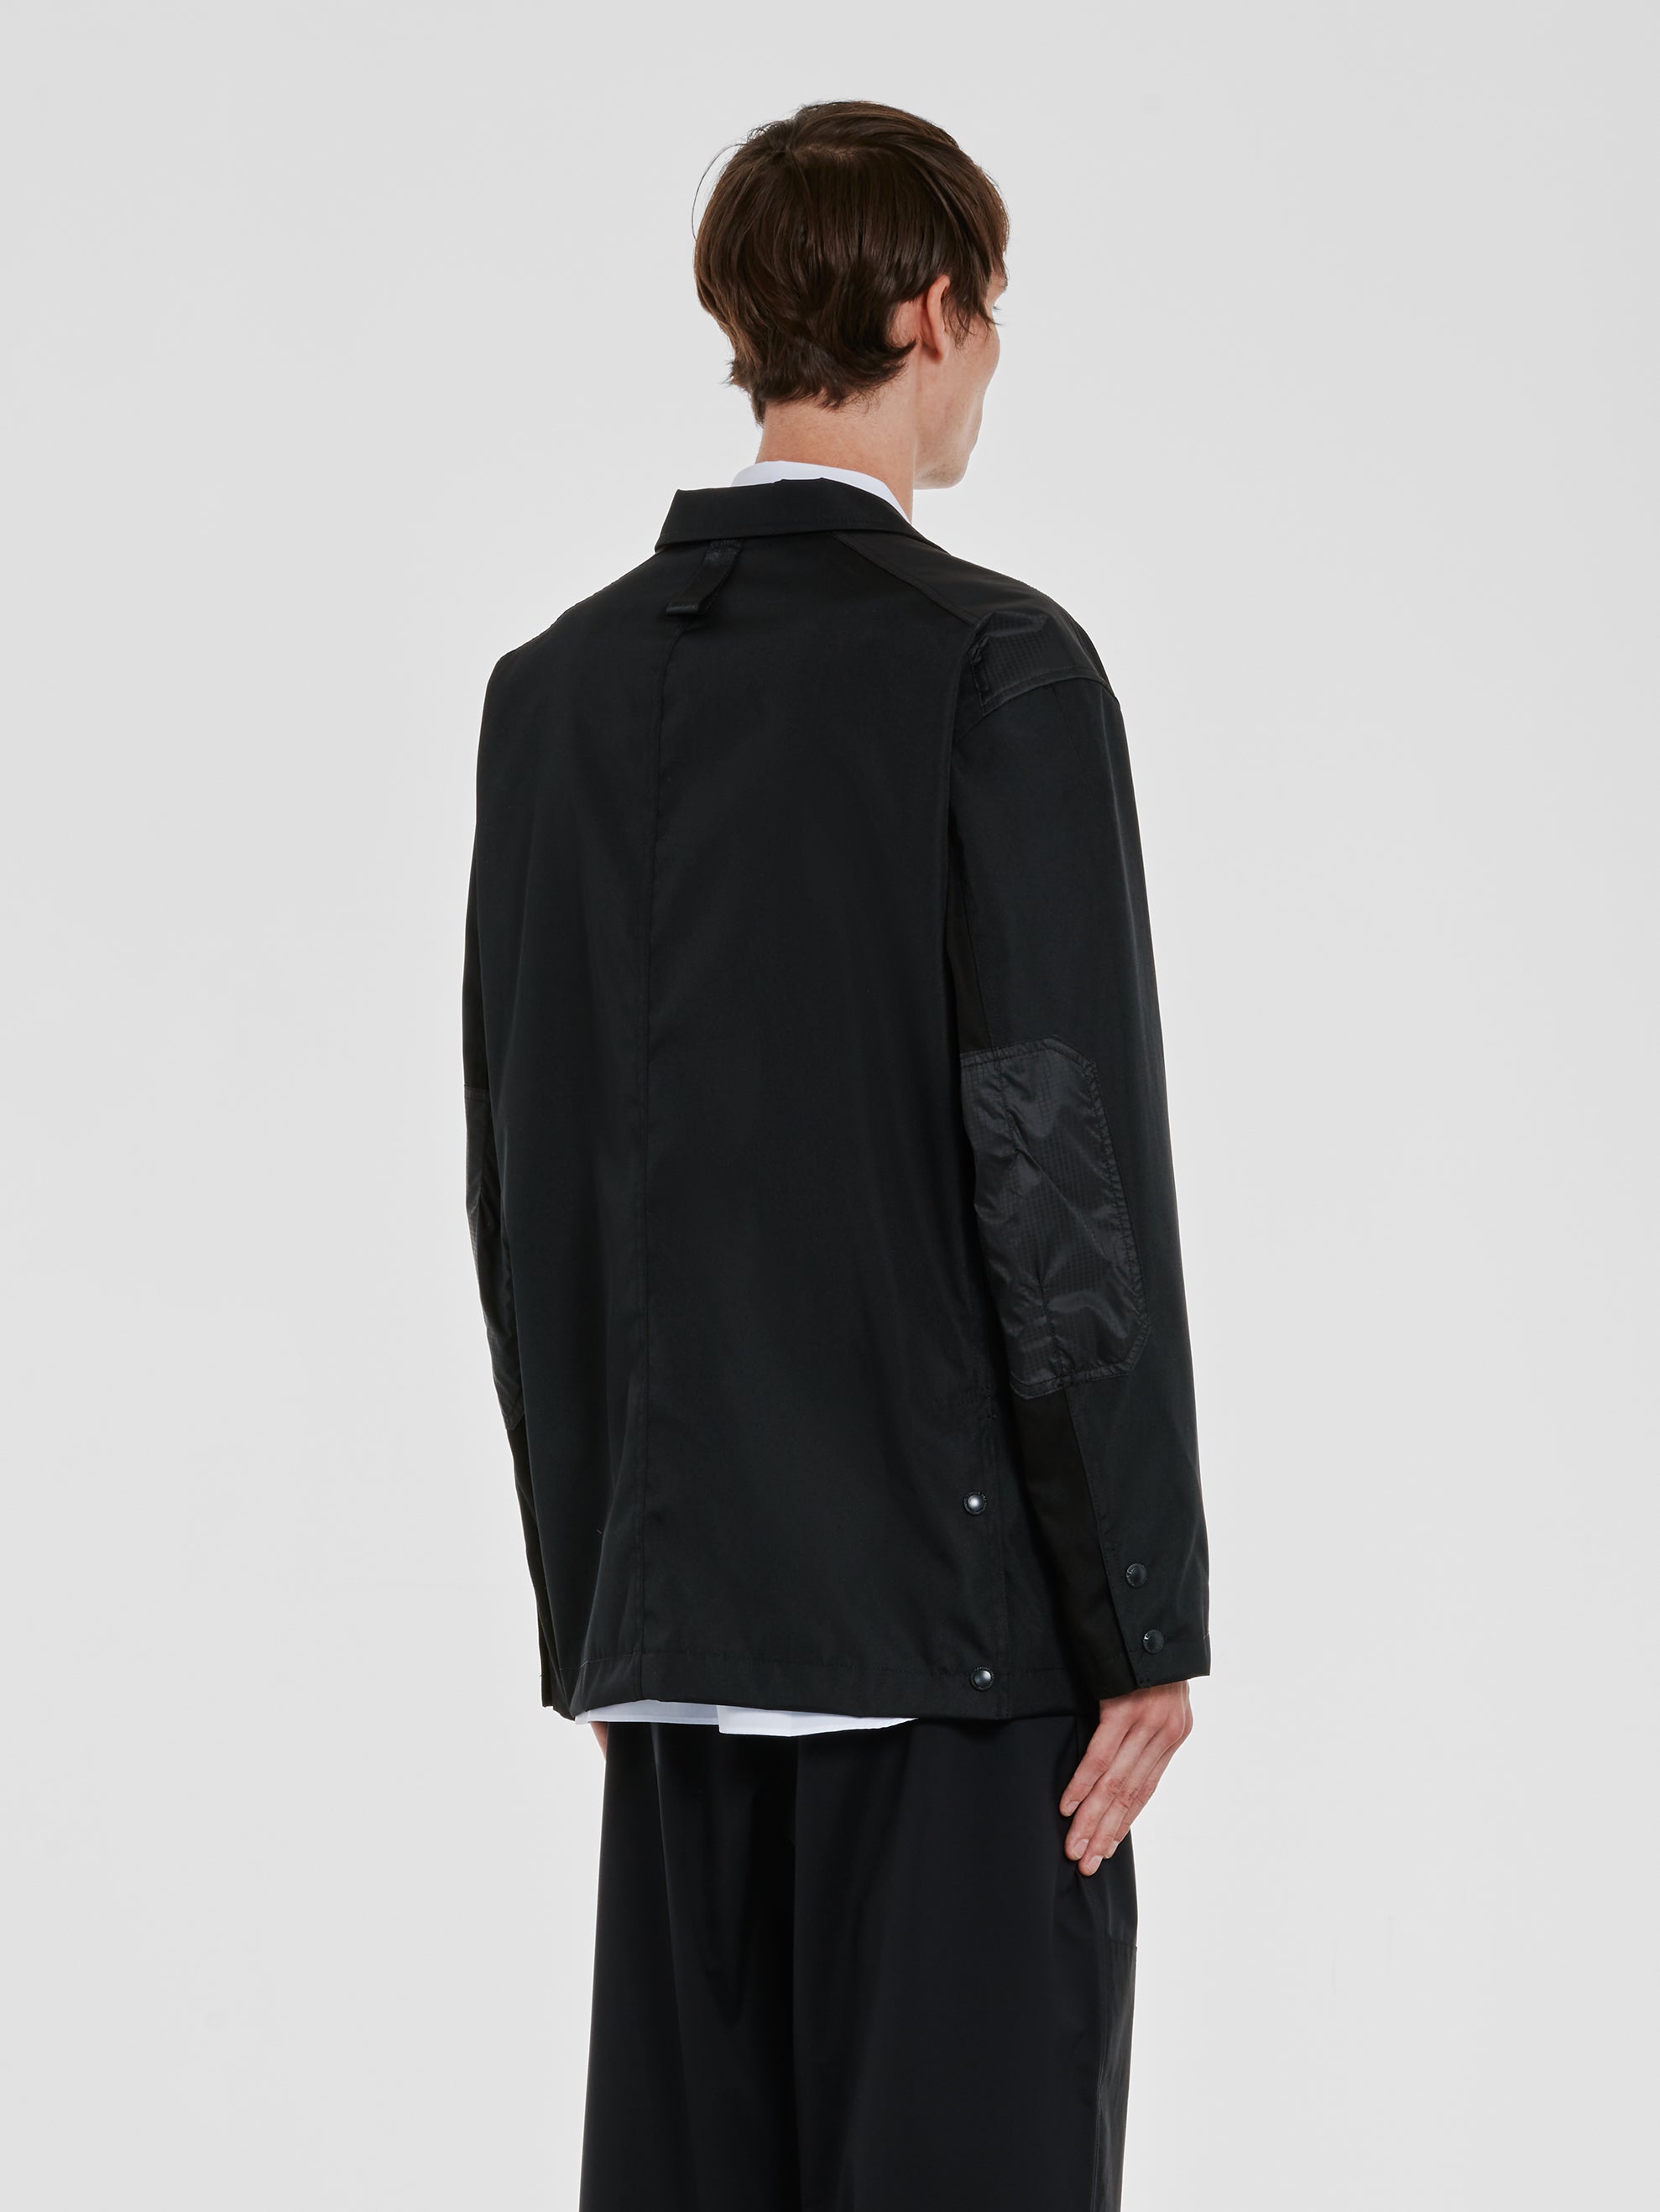 Comme des Garçons Homme - Men’s Polyester Jacket - (Black) view 3